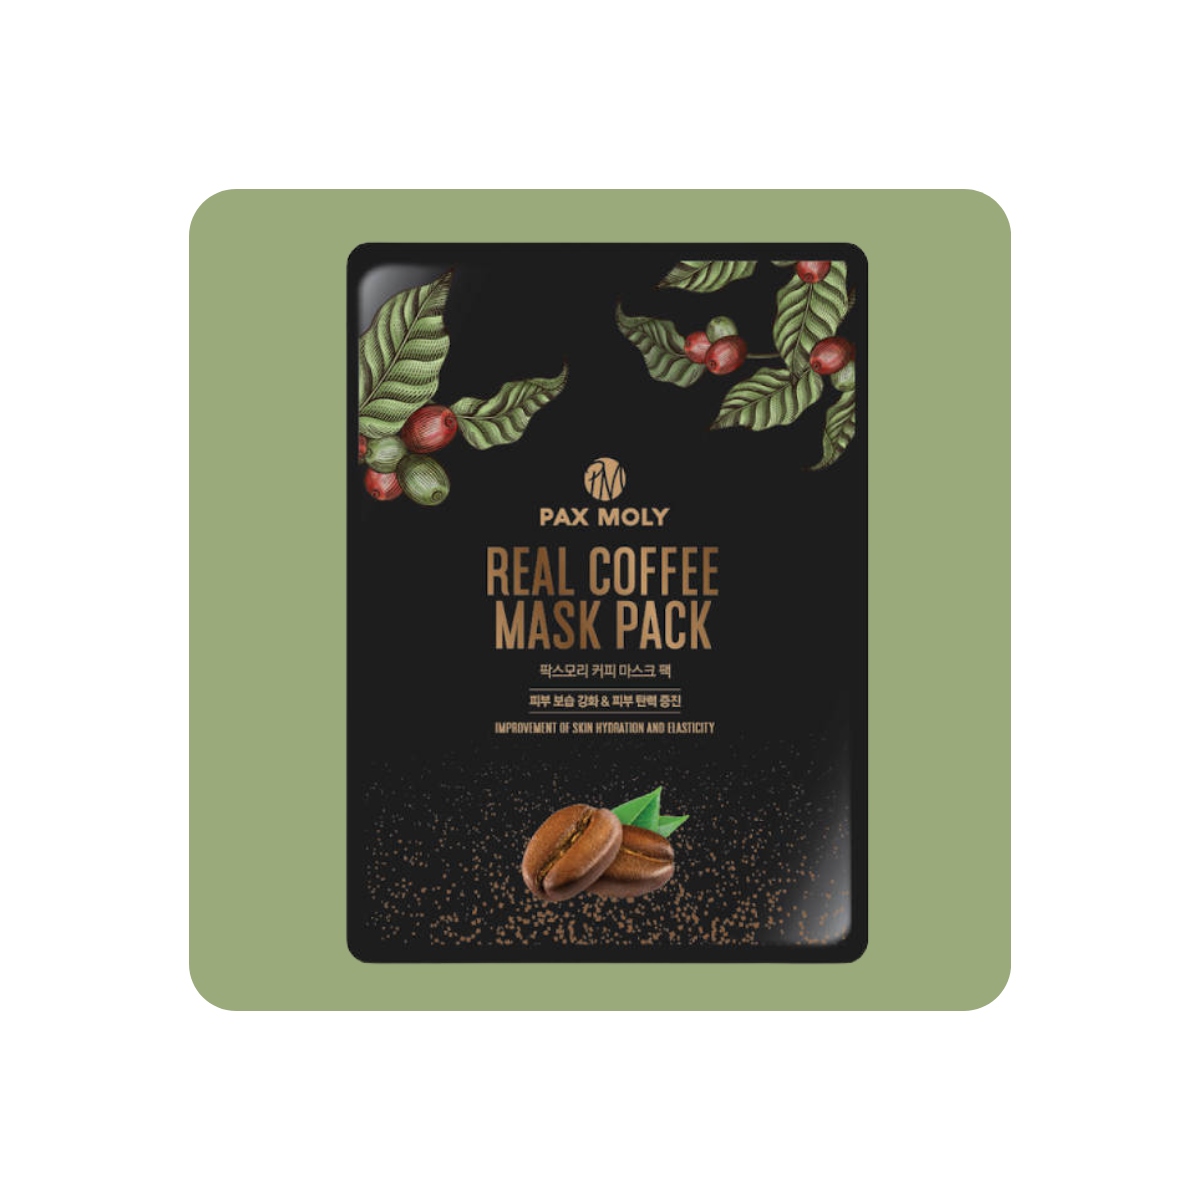 Mascarillas Coreanas de Hoja al mejor precio: PAX Moly Real Coffee Mask Pack - Revitaliza y Regenera de PAX MOLY en Skin Thinks - Piel Seca